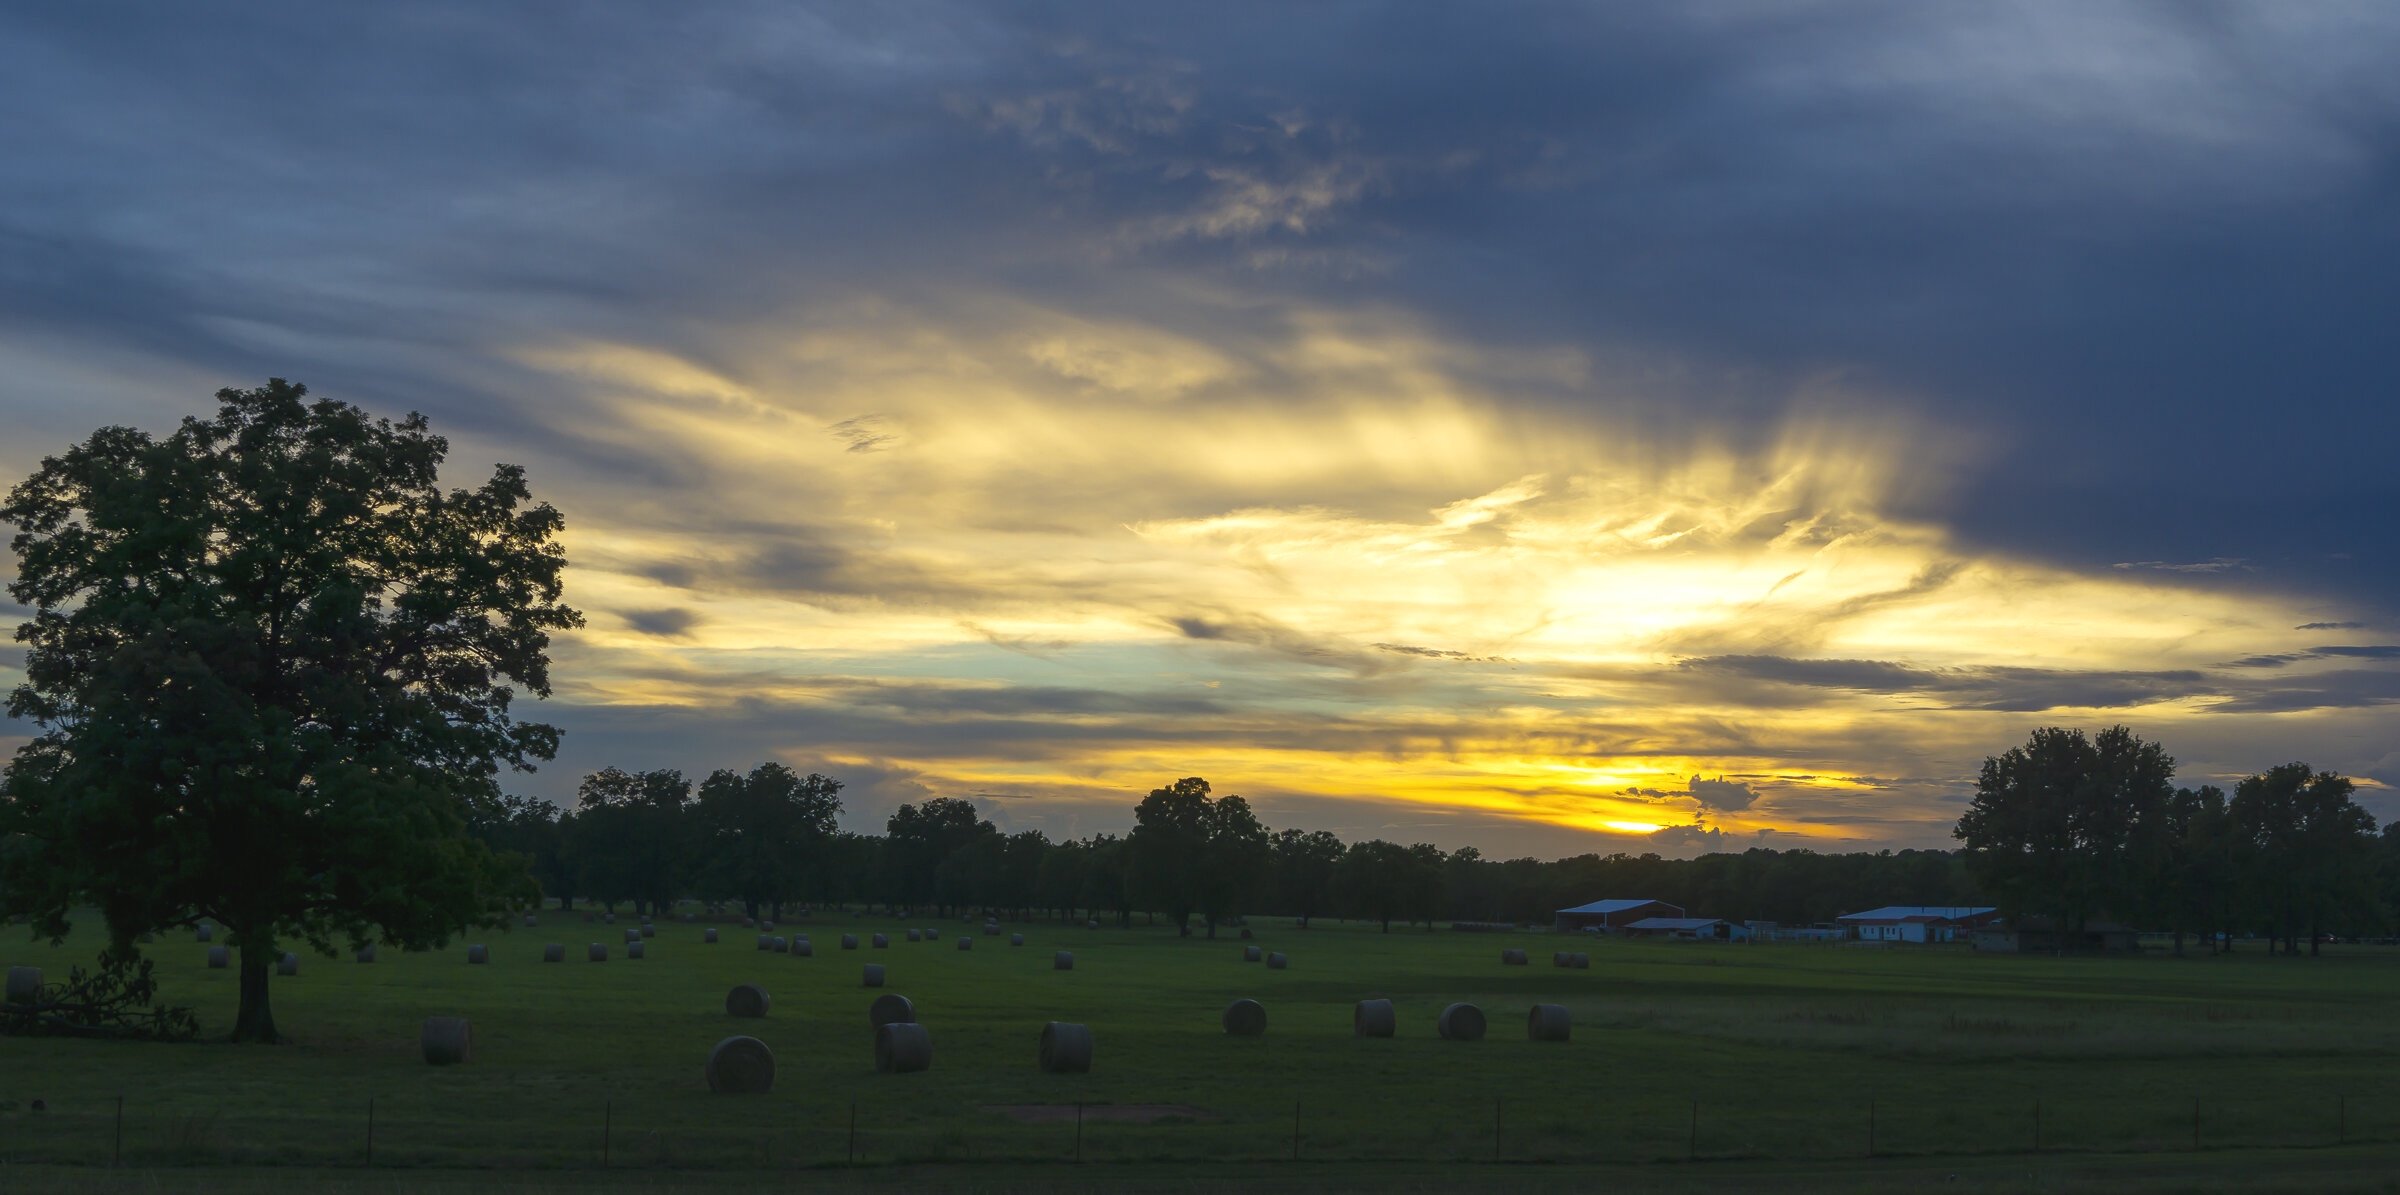 Sunset over Oklahoma Farm